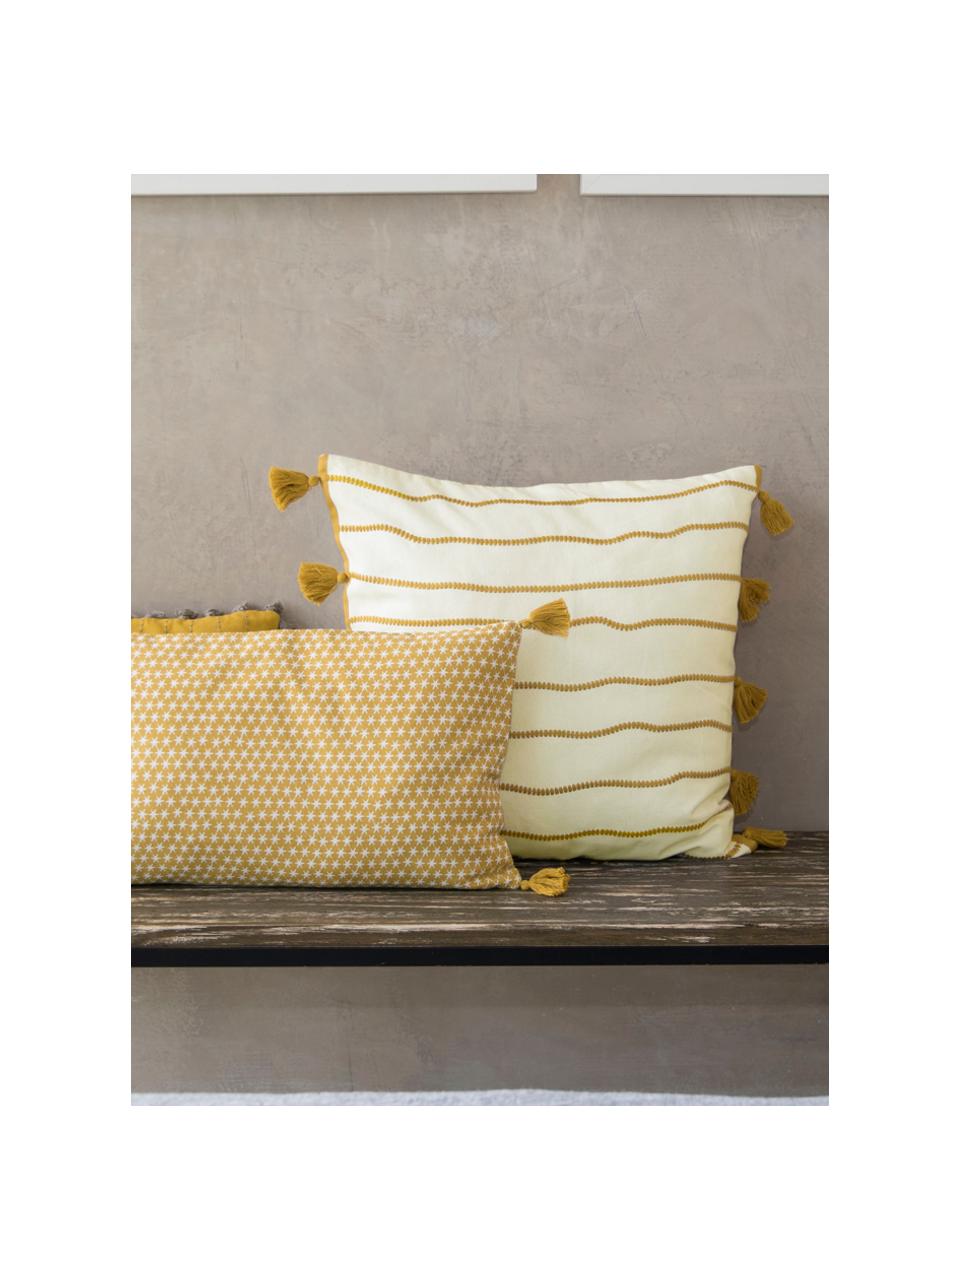 Kissenhülle Blanket mit Quasten, 100% Baumwolle, Gelb, Weiß, 50 x 50 cm